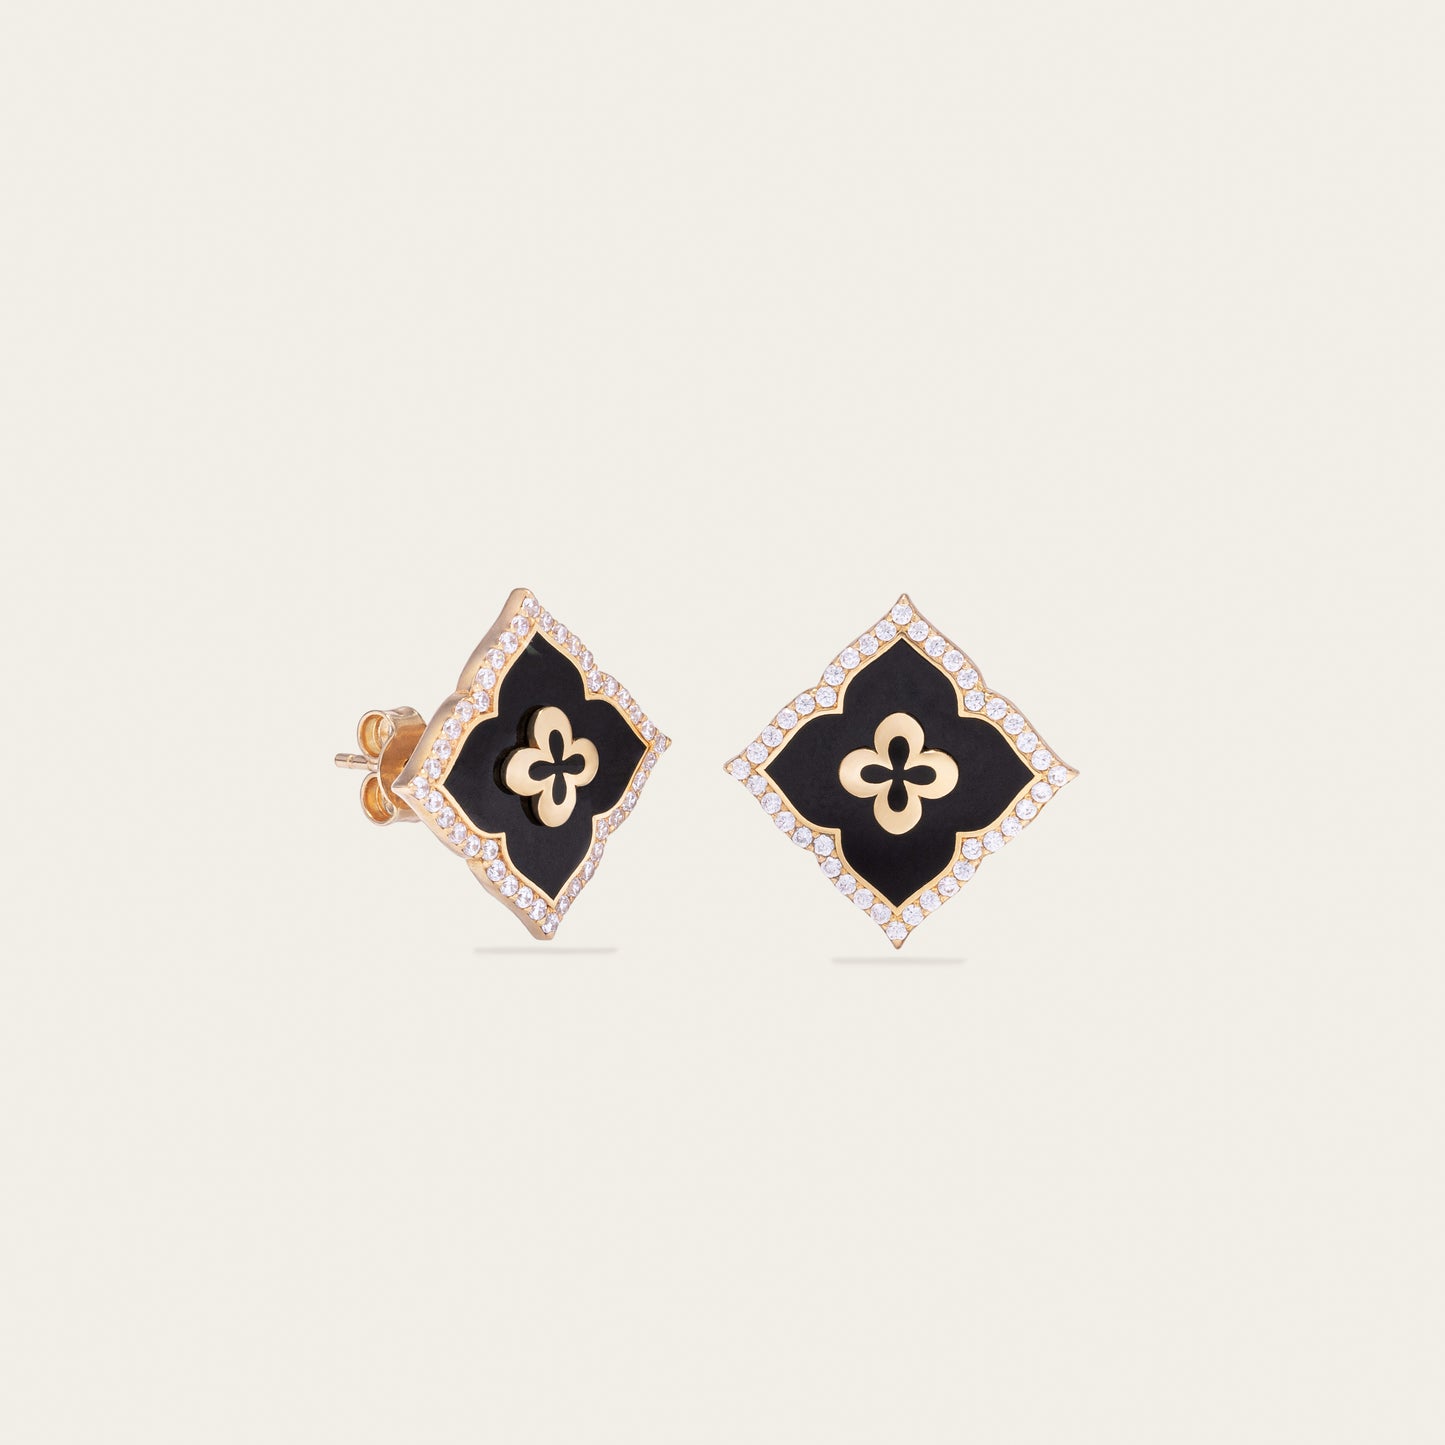 noorelle, enigma fine earrings, jewellery, earrings, gold and black earrings, earrings for girl